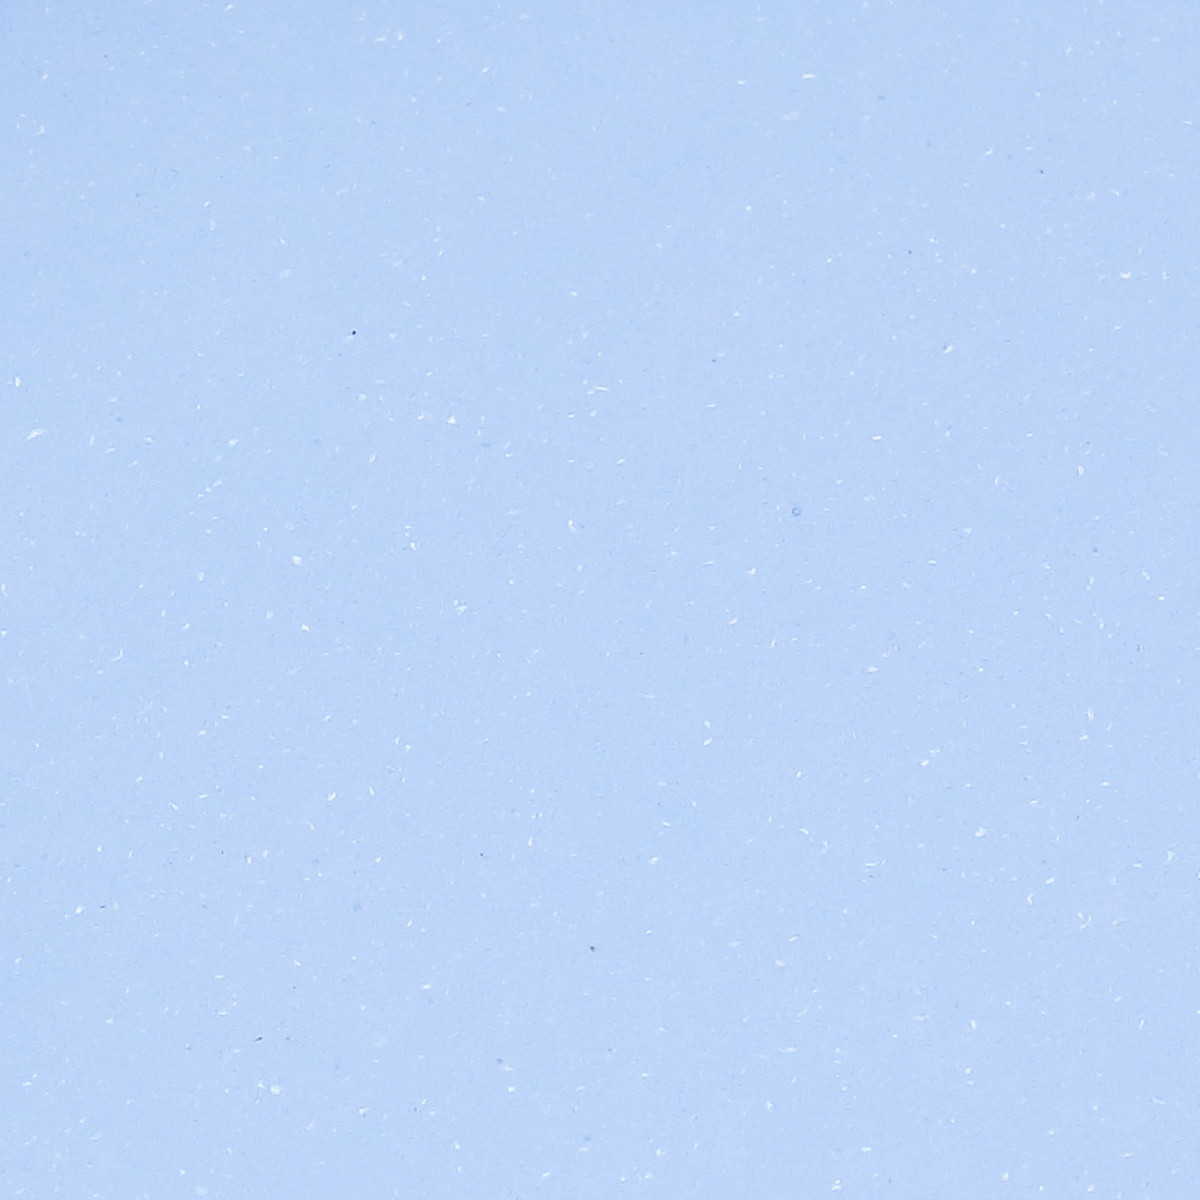 Картон тонированный Лилия Холдинг 420х594 мм 300 г, дымчато-голубой альбом для рисования 20л а4 белый кролик скрепка мел картон выб лак